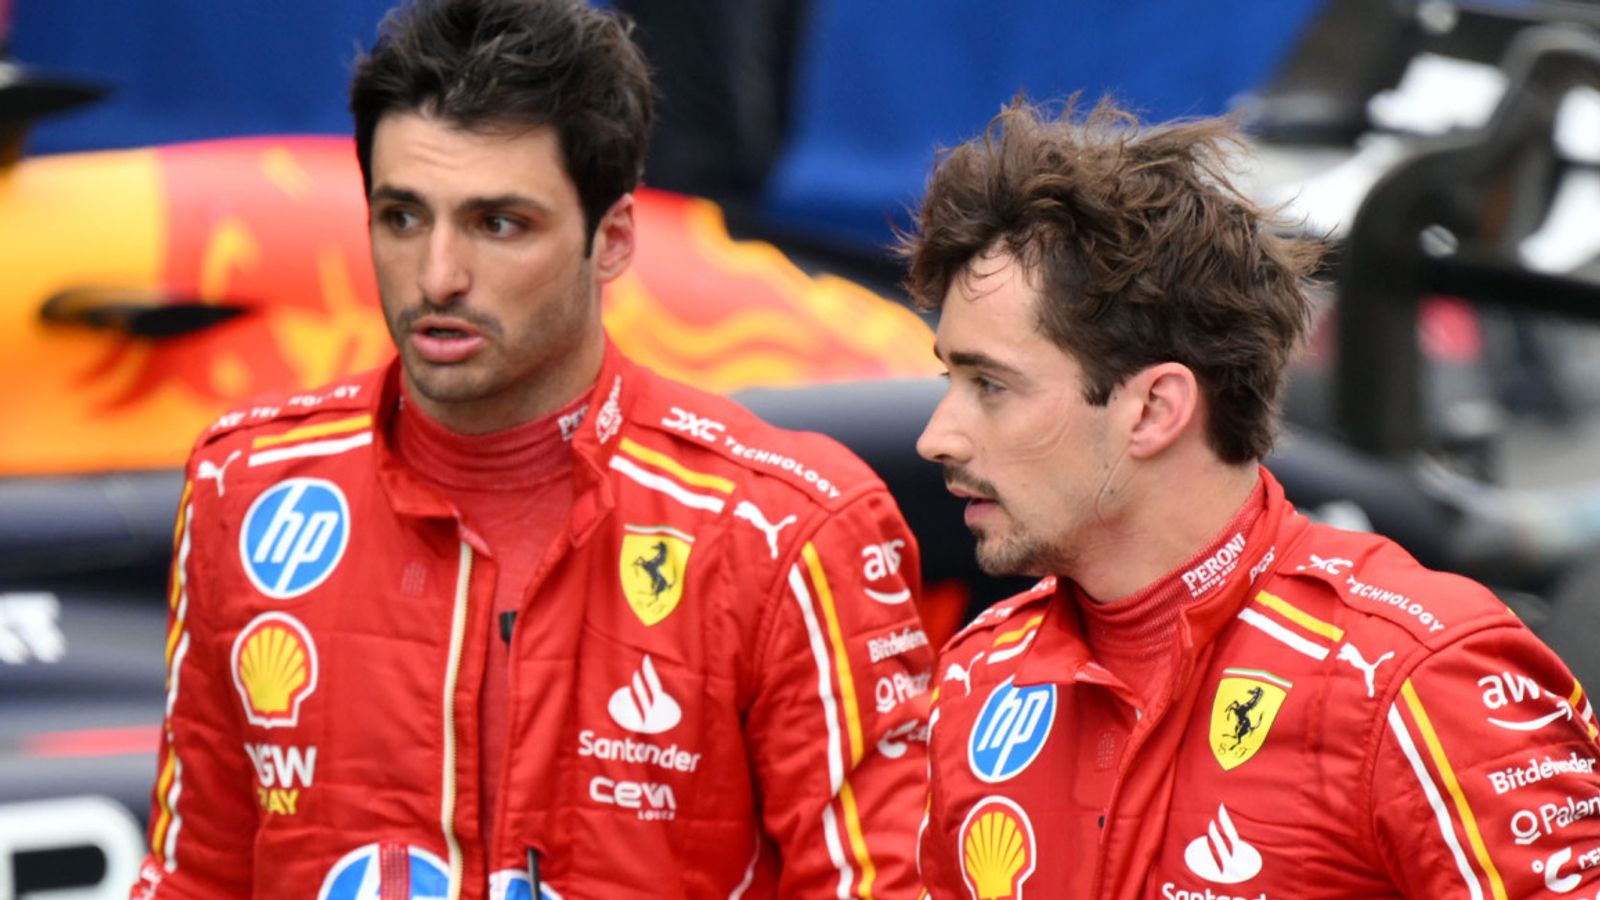 Gran Premio de España: Carlos Sainz y Charles Leclerc de Ferrari no están de acuerdo después de una colisión temprana en Barcelona |  noticias de formula 1